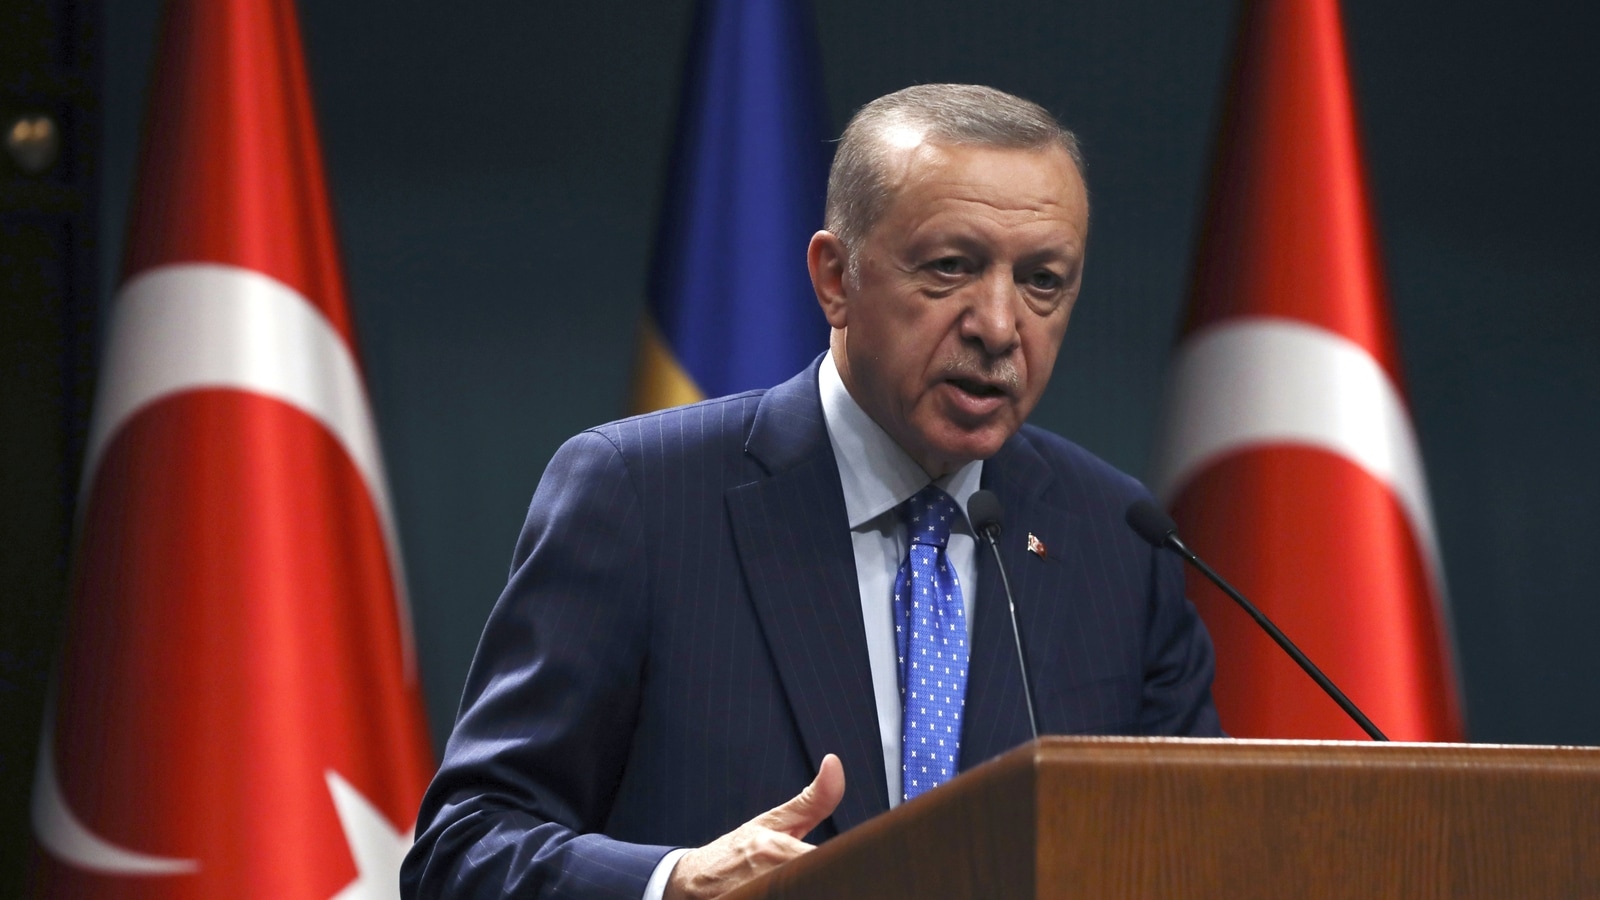 Quran-burning: Turkey's Erdogan says no support for Sweden's NATO bids